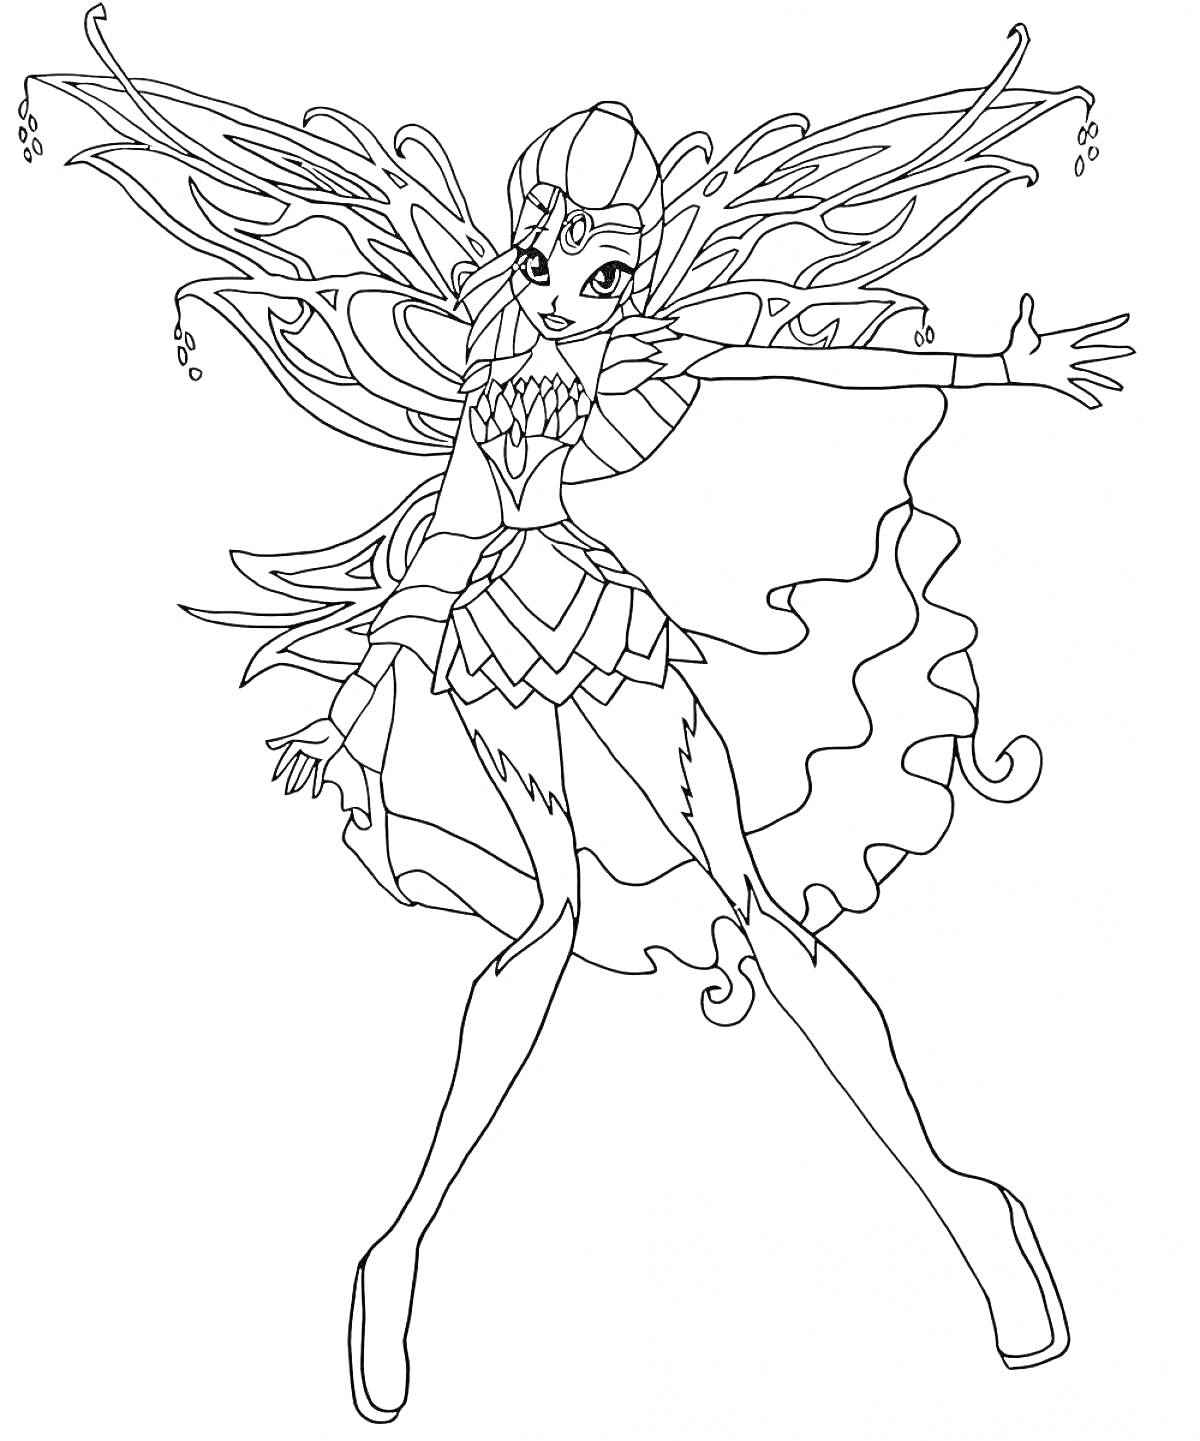 Раскраска Фея Винкс в стиле Блумикс с большими крыльями и раскрытыми руками